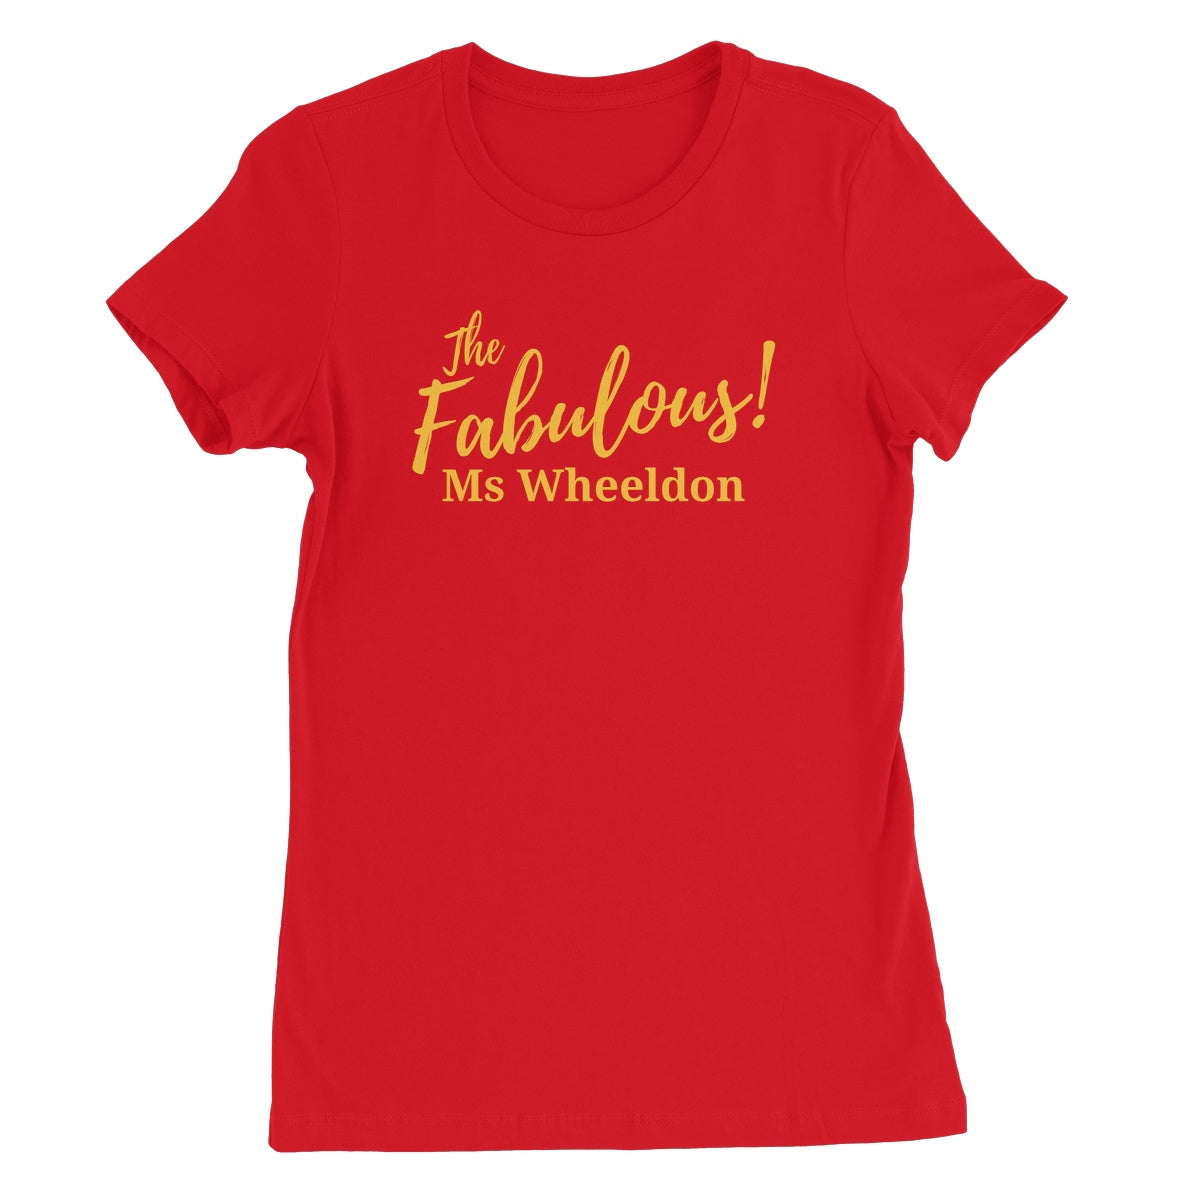 Personalise Your Shirt! Women's Favourite T-Shirt